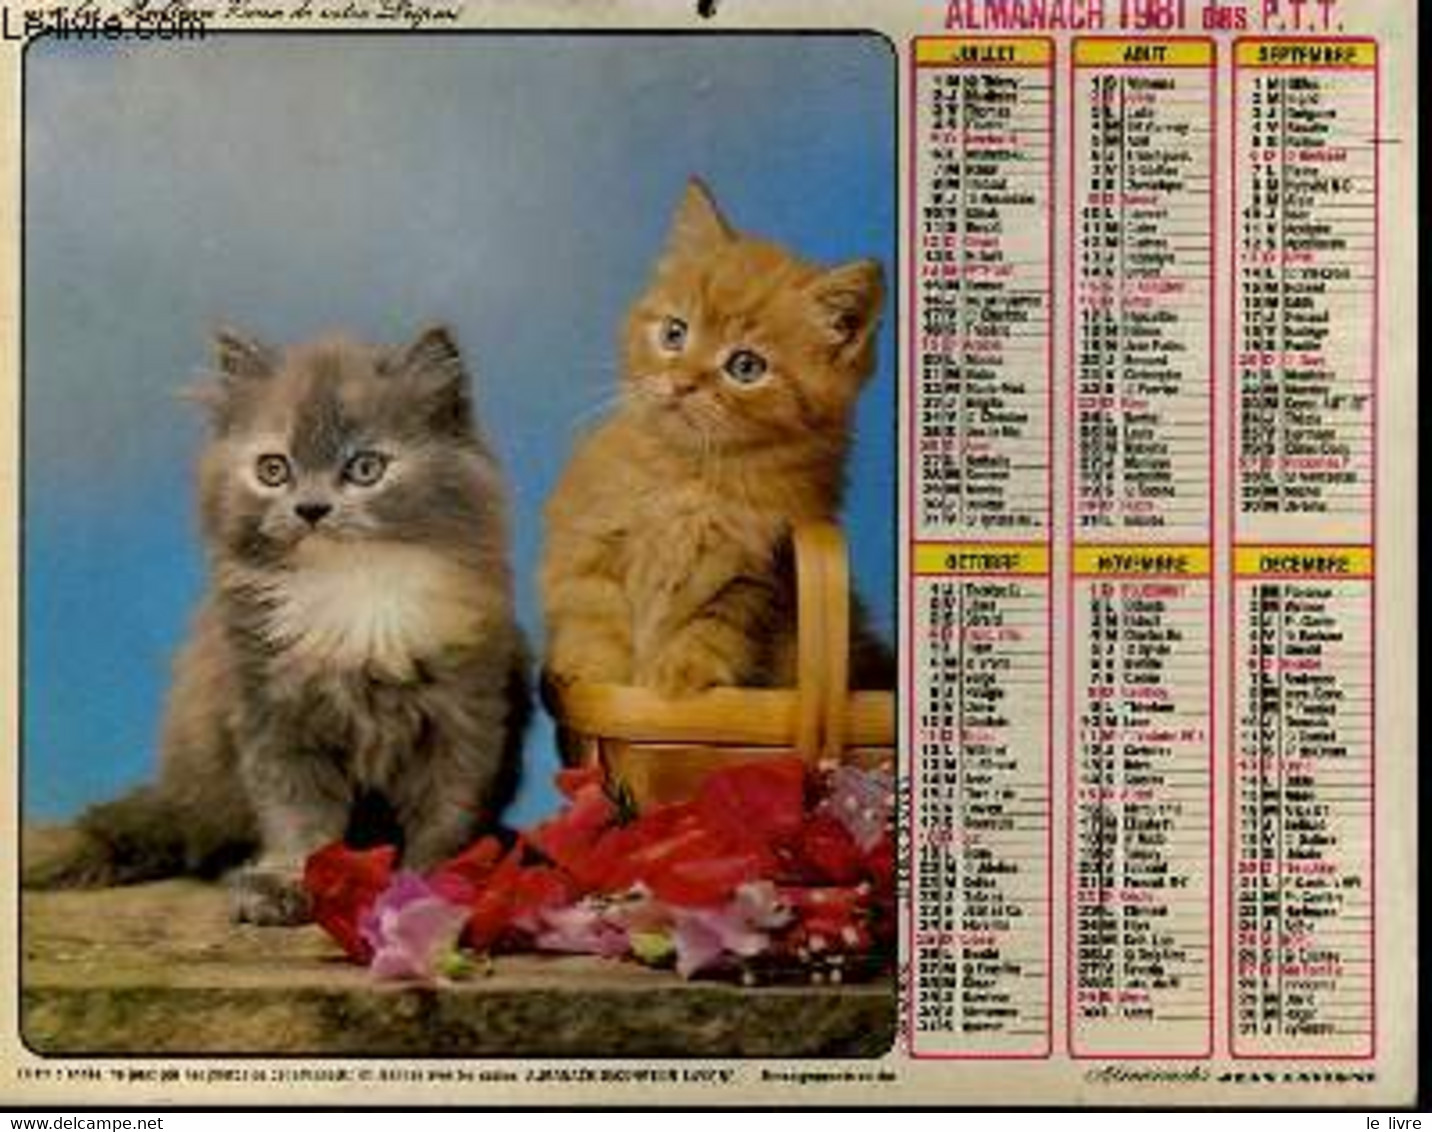 Calendrier chatons 2024 - cartonné - Collectif - Achat Livre